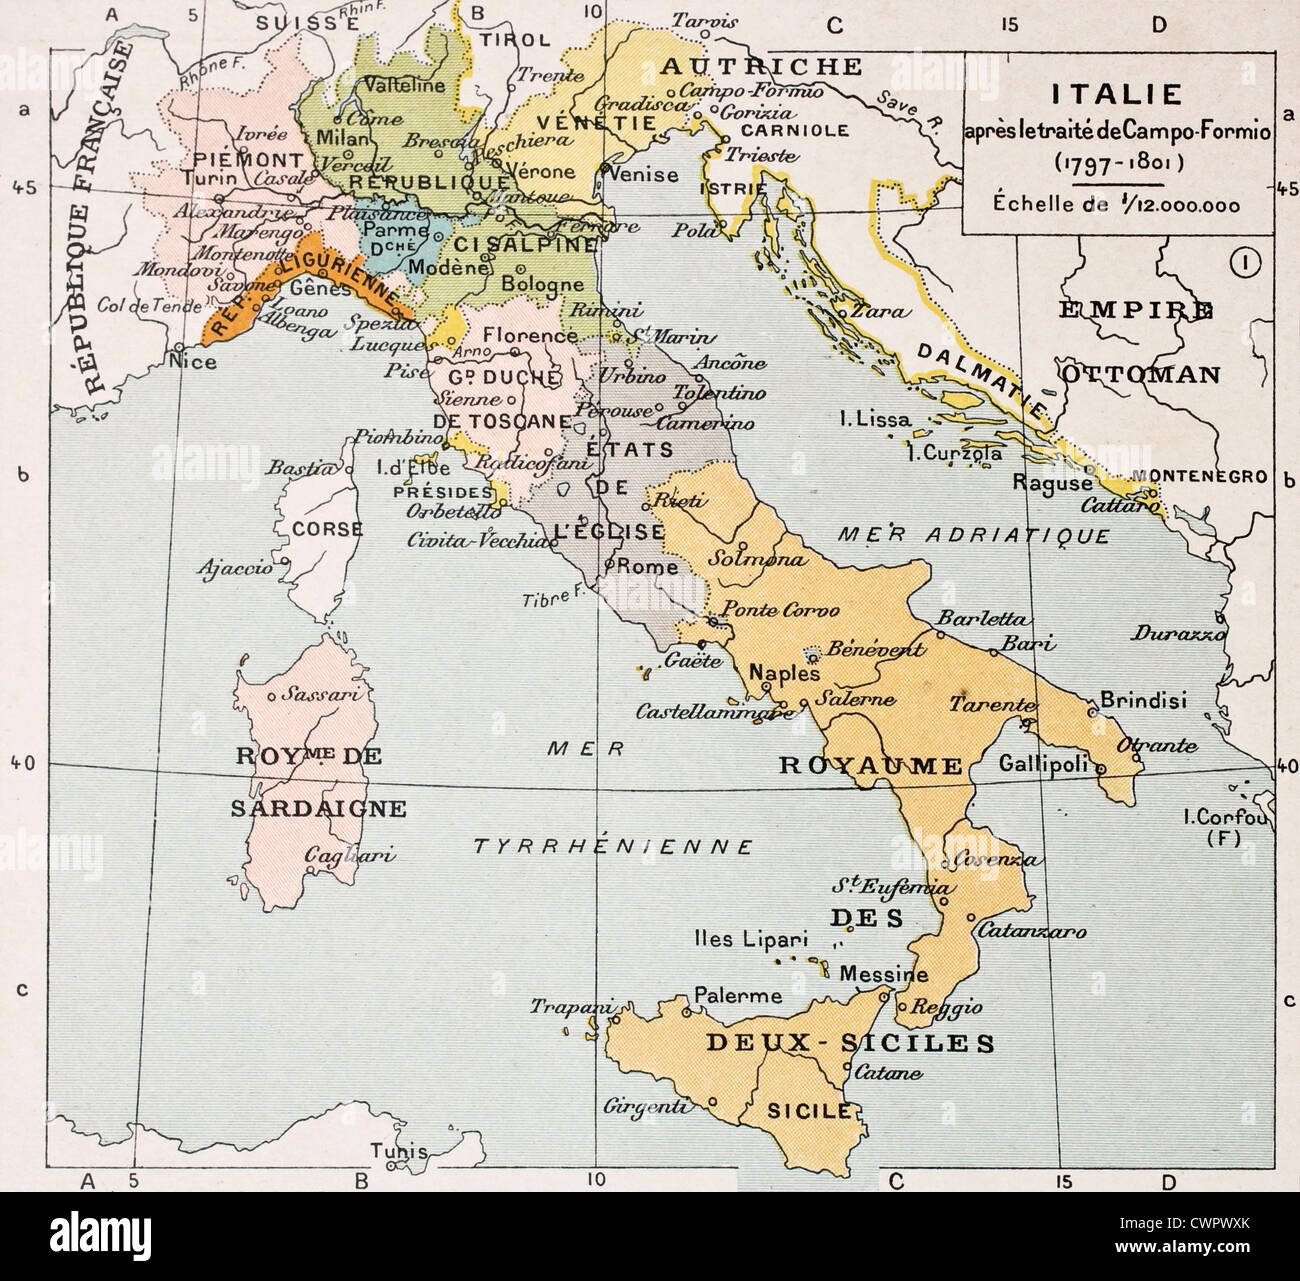 Mappa italia immagini e fotografie stock ad alta risoluzione - Alamy